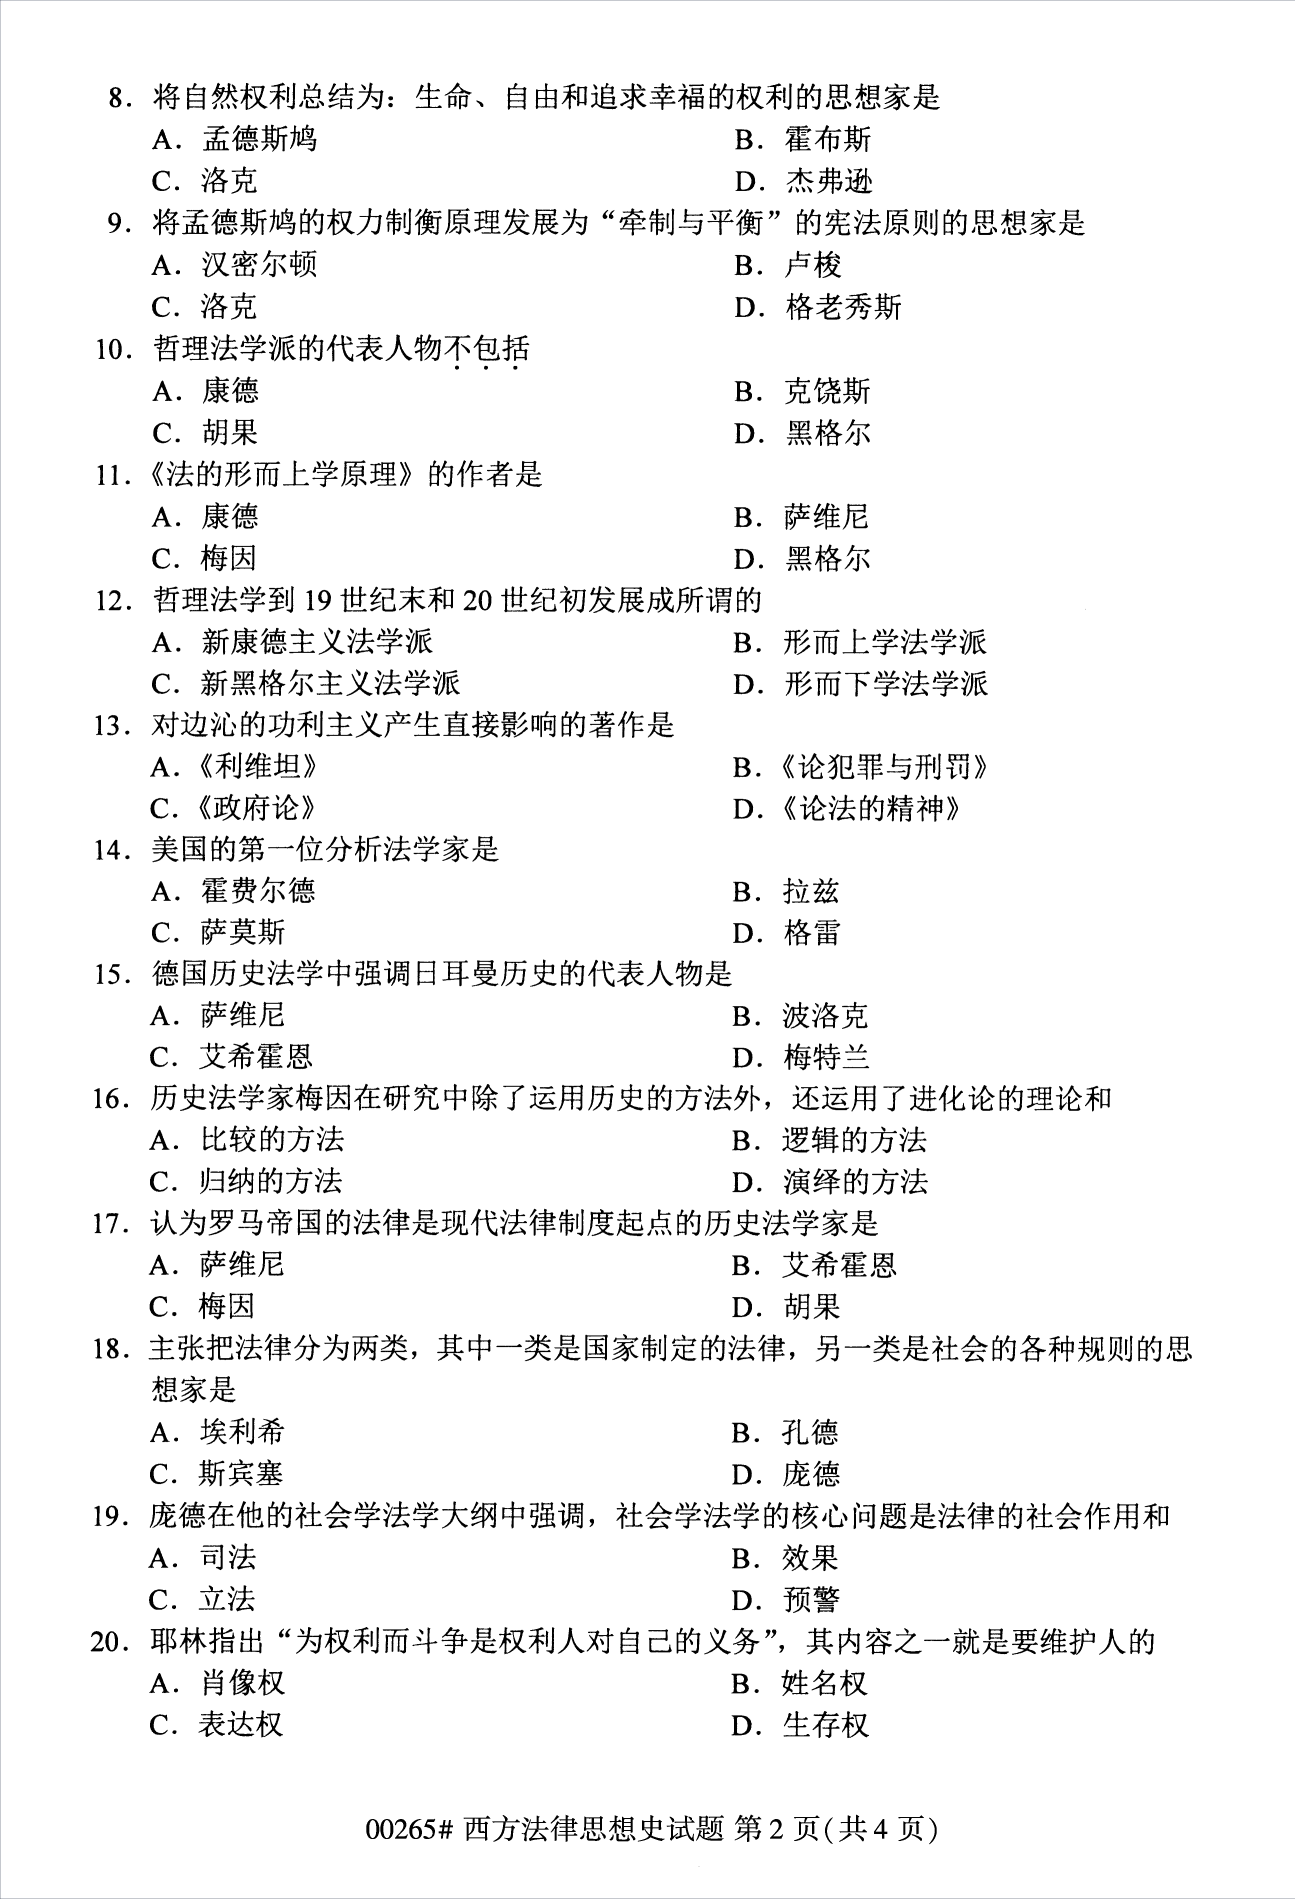 2022年10月江苏苏州自考00265西方法律思想史真题试卷